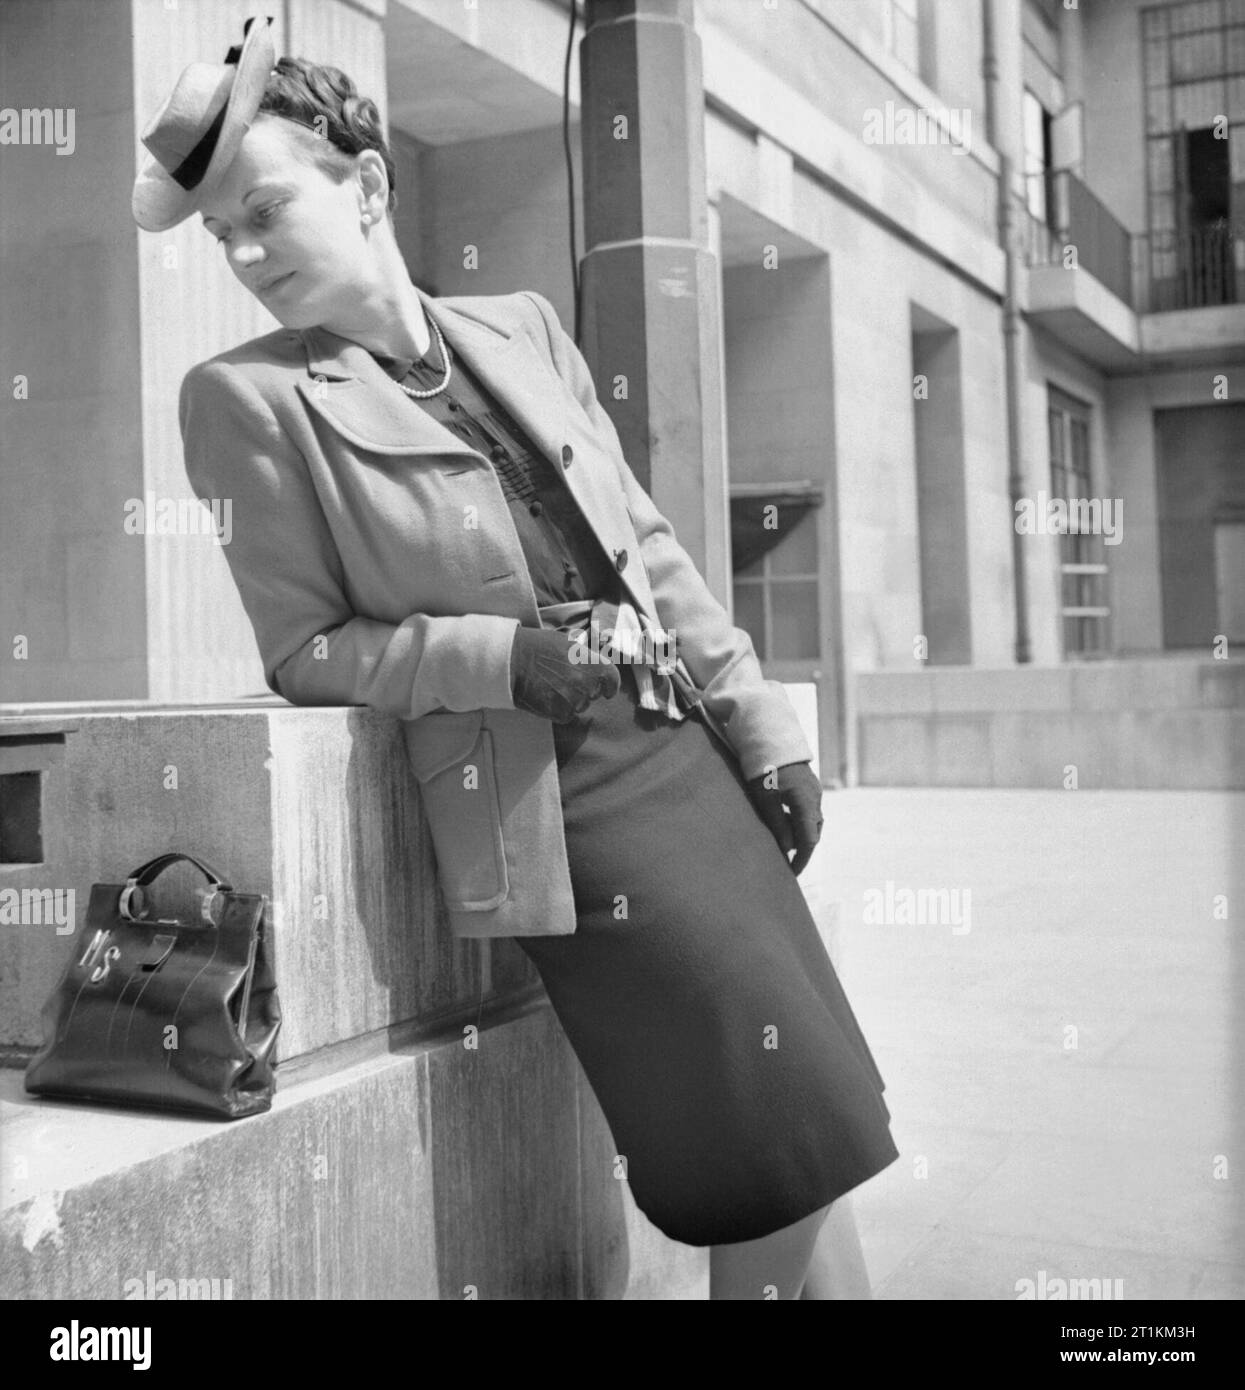 Wie eine britische Frau Kleider in Kriegszeiten - Utility Kleidung in Großbritannien, 1943 ein Modell gegen eine niedrige Mauer lehnt, ihren Kopf schräg nach unten, weg von Ihrem Outfit zu zeigen. Sie trägt die Jacke von einem cyclamen Utility Anzug, gekauft von Dickins und Jones Ltd., für 18 Coupons und 82/2 d mit einem schwarzen Rock von einer anderen Farbe. Sie ist auch mit Hut und Handschuhe und ihre Handtasche ist Aufgestützt auf der Wand neben ihr. Dieses Foto wurde am Eingang zum Senat Haus genommen, dem Sitz des Ministeriums für Informationen. Stockfoto